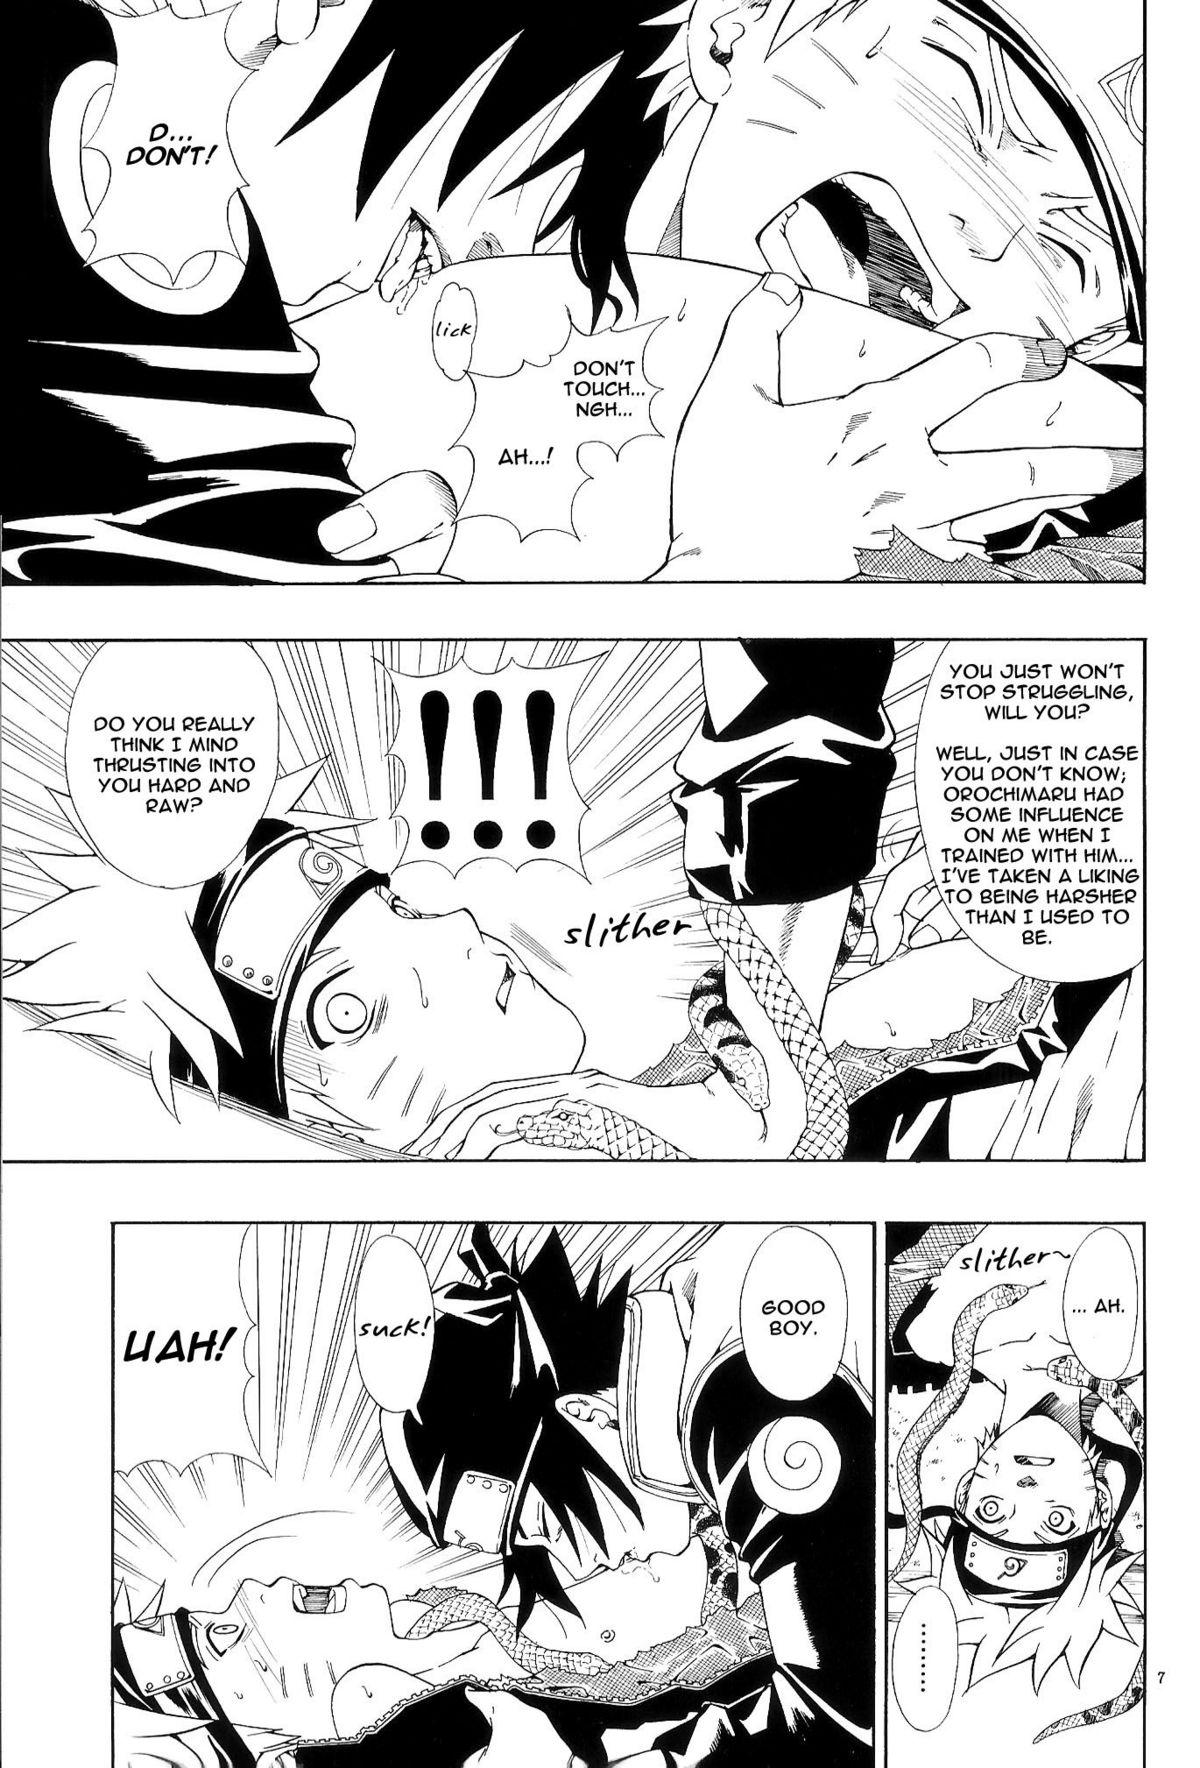 Pervs ERO ERO²: Volume 1.5 (NARUTO) [Sasuke X Naruto] YAOI -ENG- - Naruto Gay Facial - Page 6